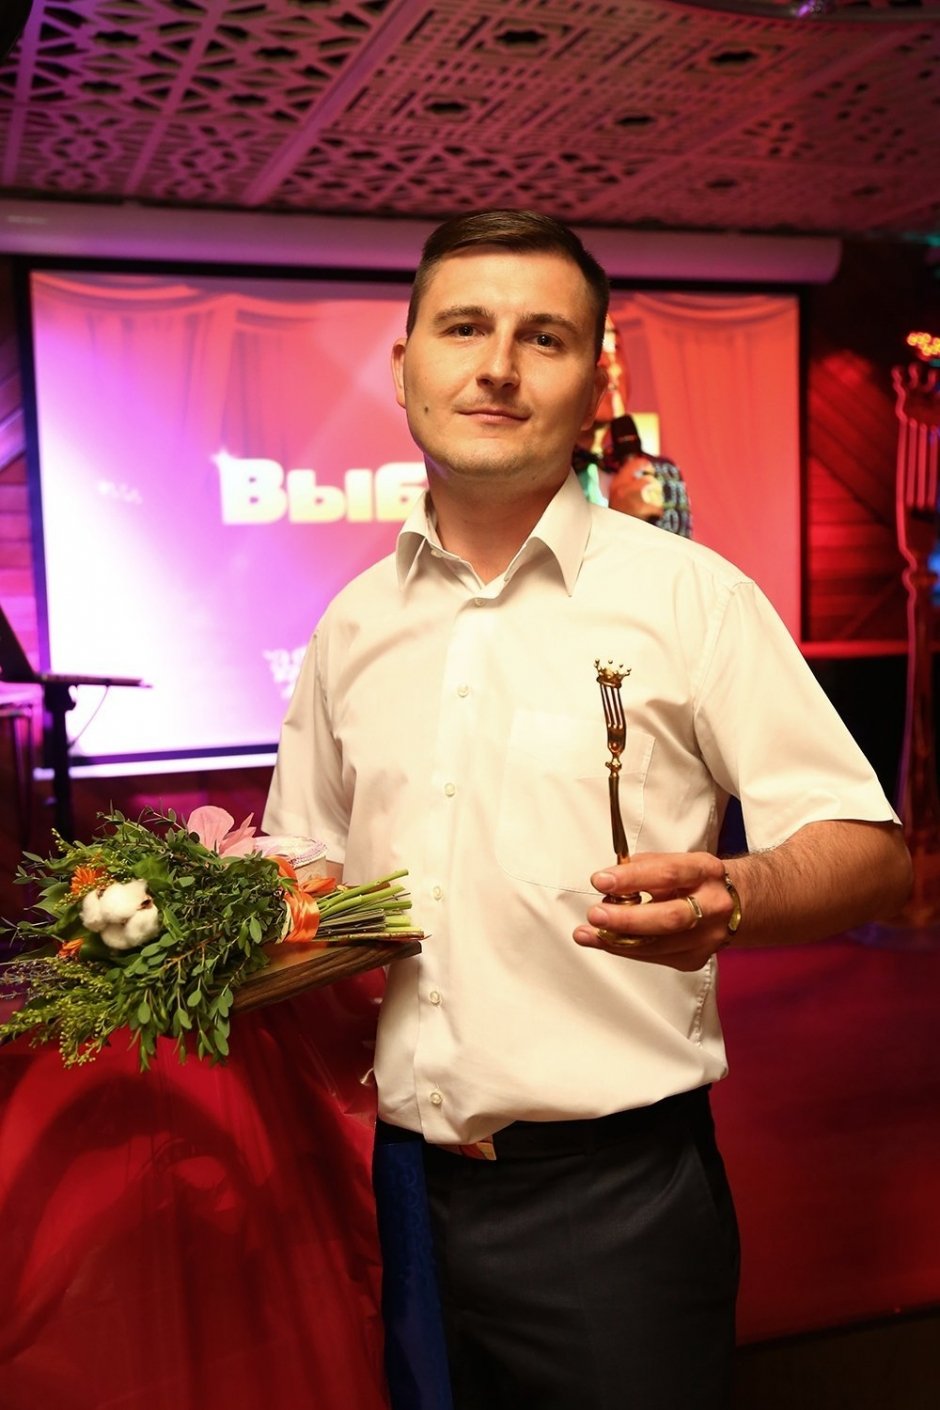 28 мая лучшим рестораторам Воронежа вручили премию «Золотая вилка»